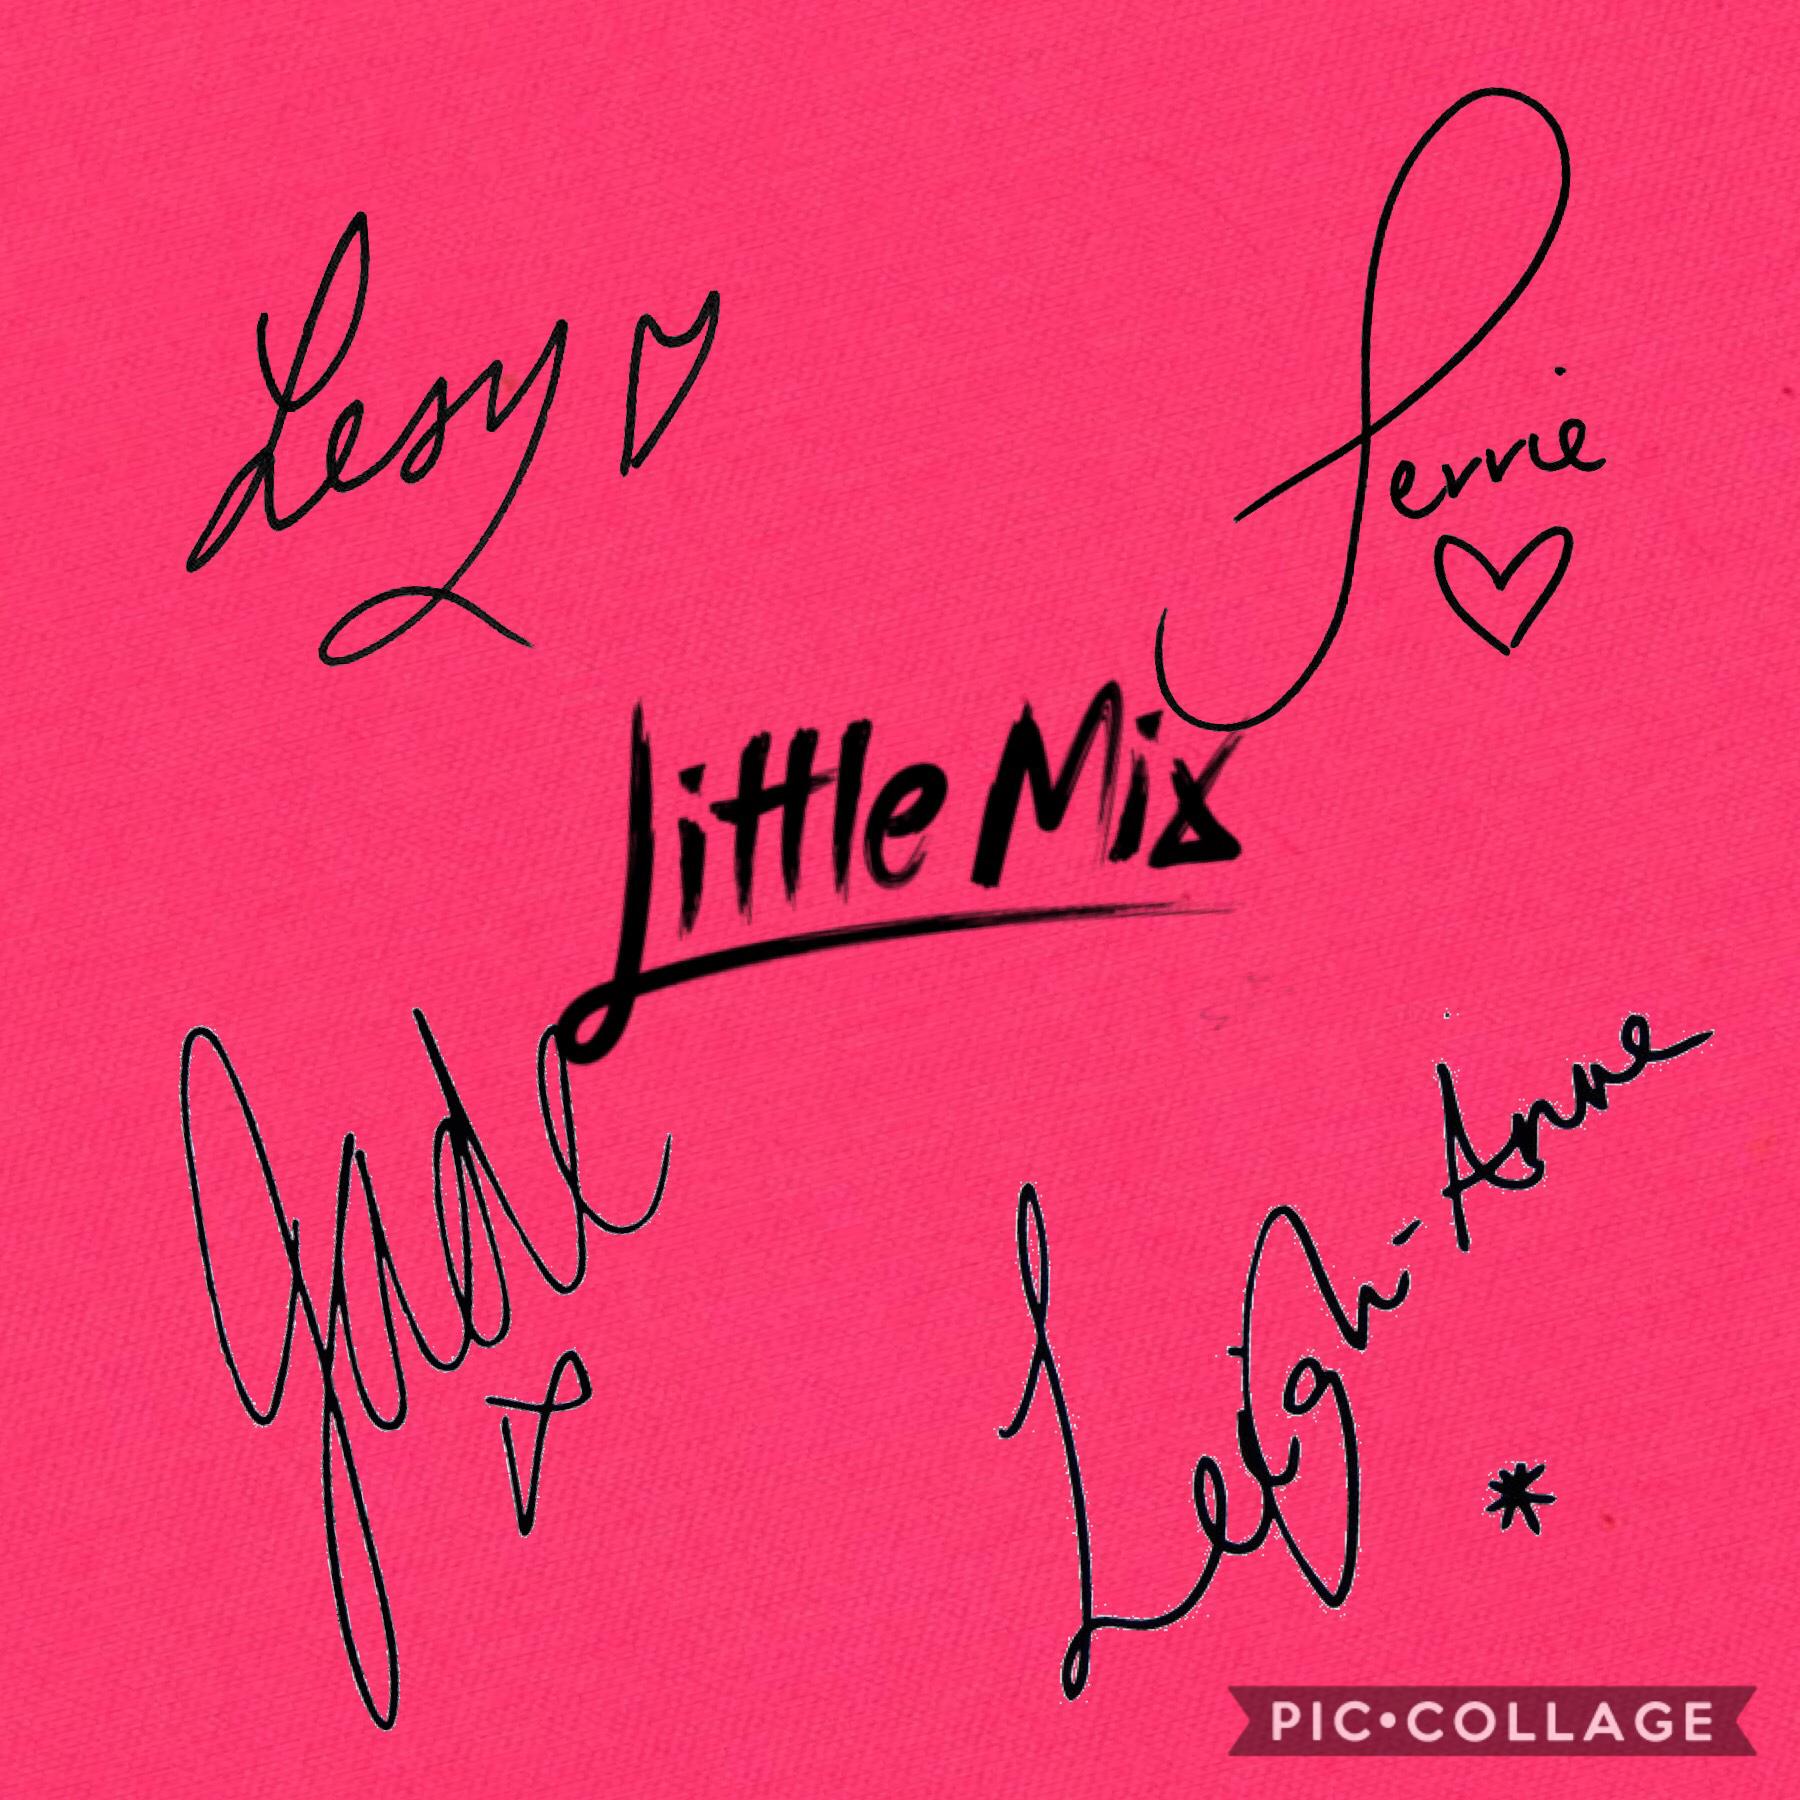 Wish Little Mix signed me something lol 😂 